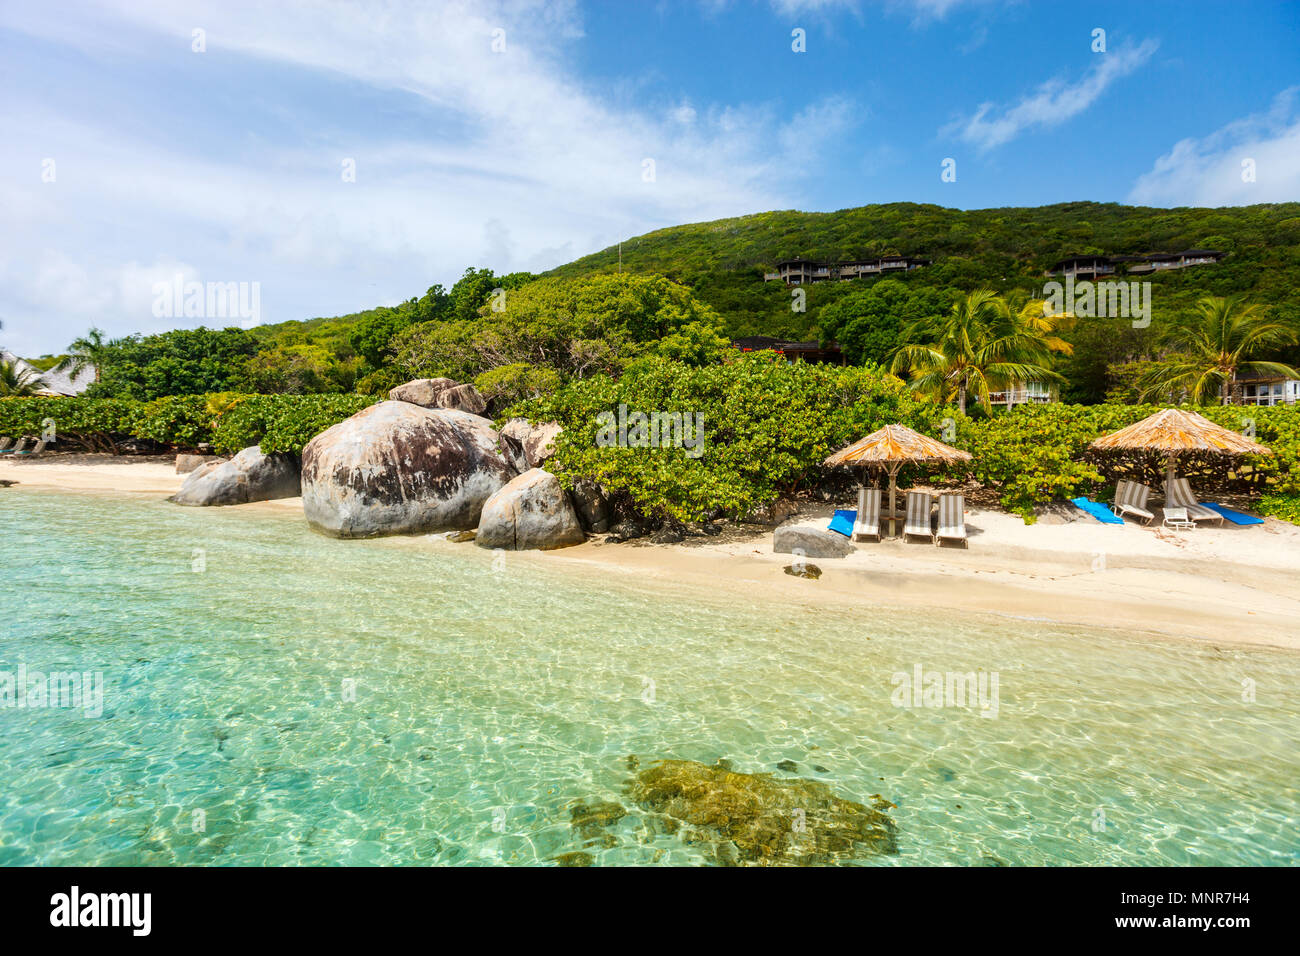 Schönen tropischen Strand mit Palmen, weißer Sand, türkises Meer Wasser und blauem Himmel auf den Britischen Jungferninseln in der Karibik Stockfoto